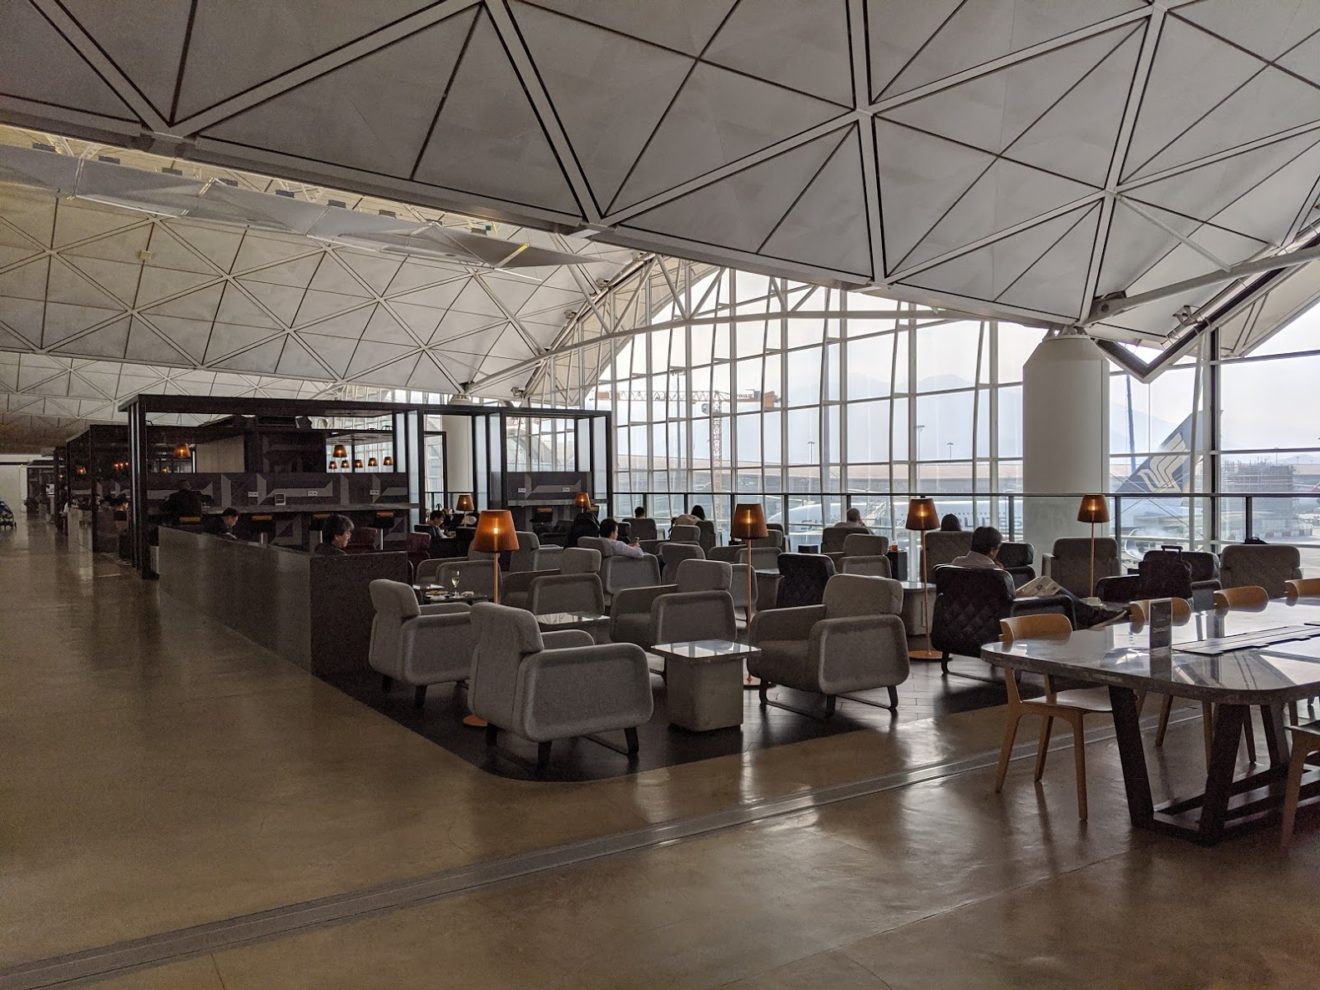 Review: Qantas Hong Kong Lounge